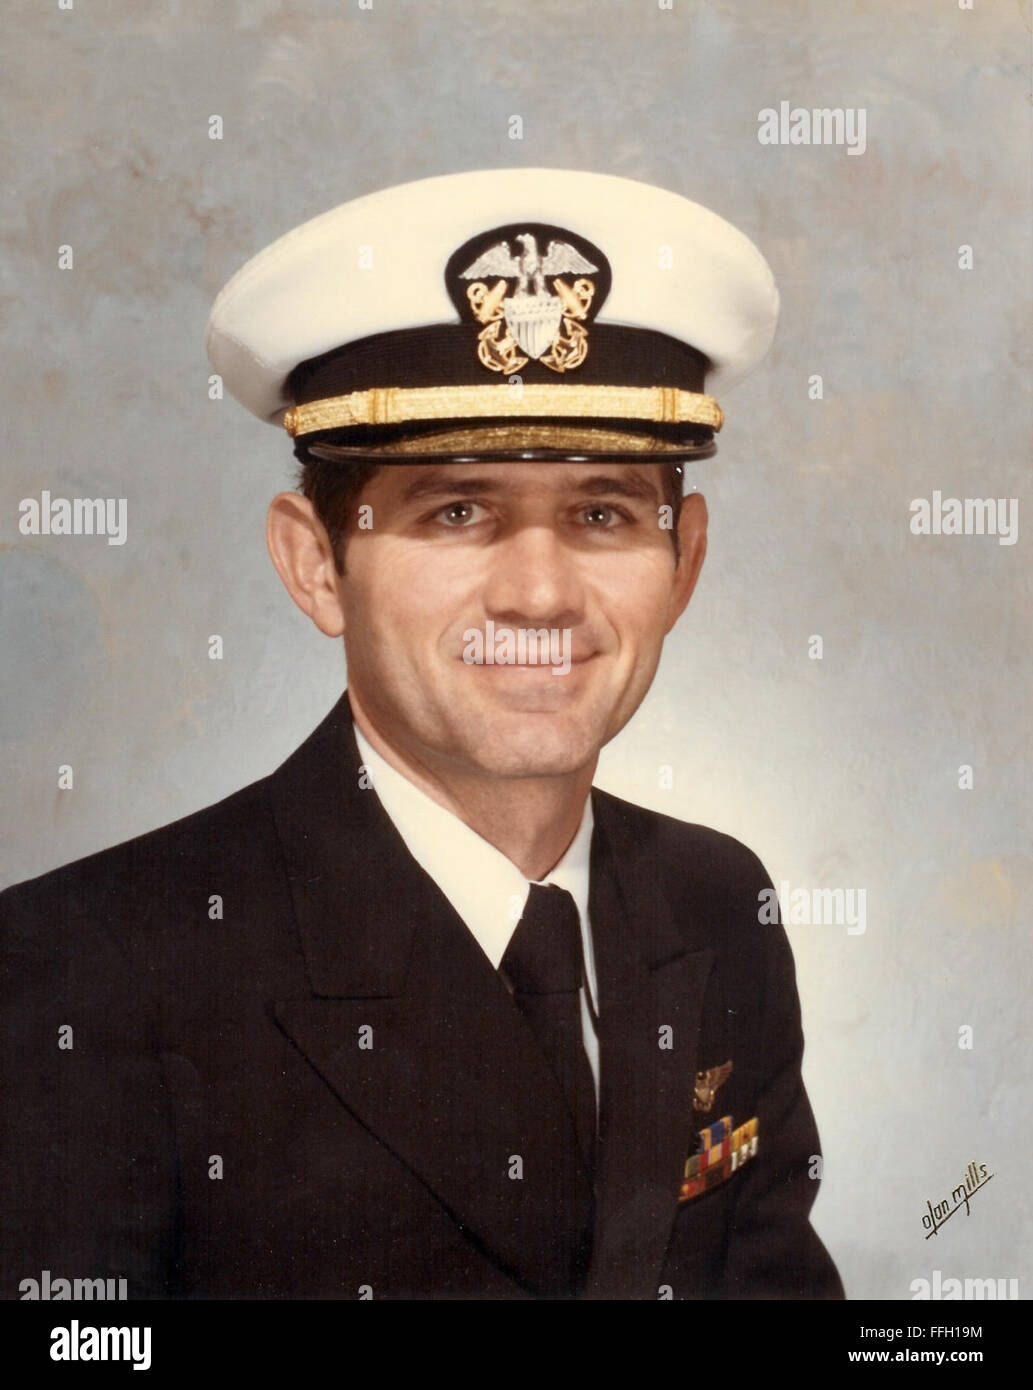 Après avoir servi comme pilote de chasse dans le Corps des Marines, ancien colonel de l'Armée de l'air (DR) James Ruffer rejoint la marine et est devenu un médecin de l'air. Banque D'Images